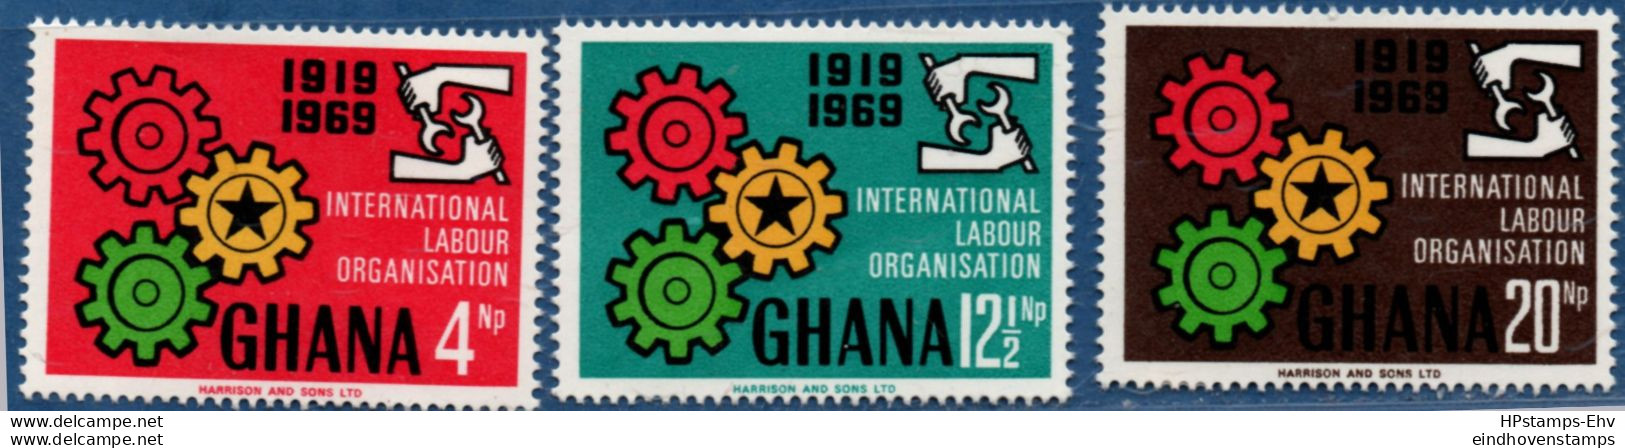 Ghana 1969, ILO Labor Organisation 3 Stamps MNH 2105.2426 OIT - OIT